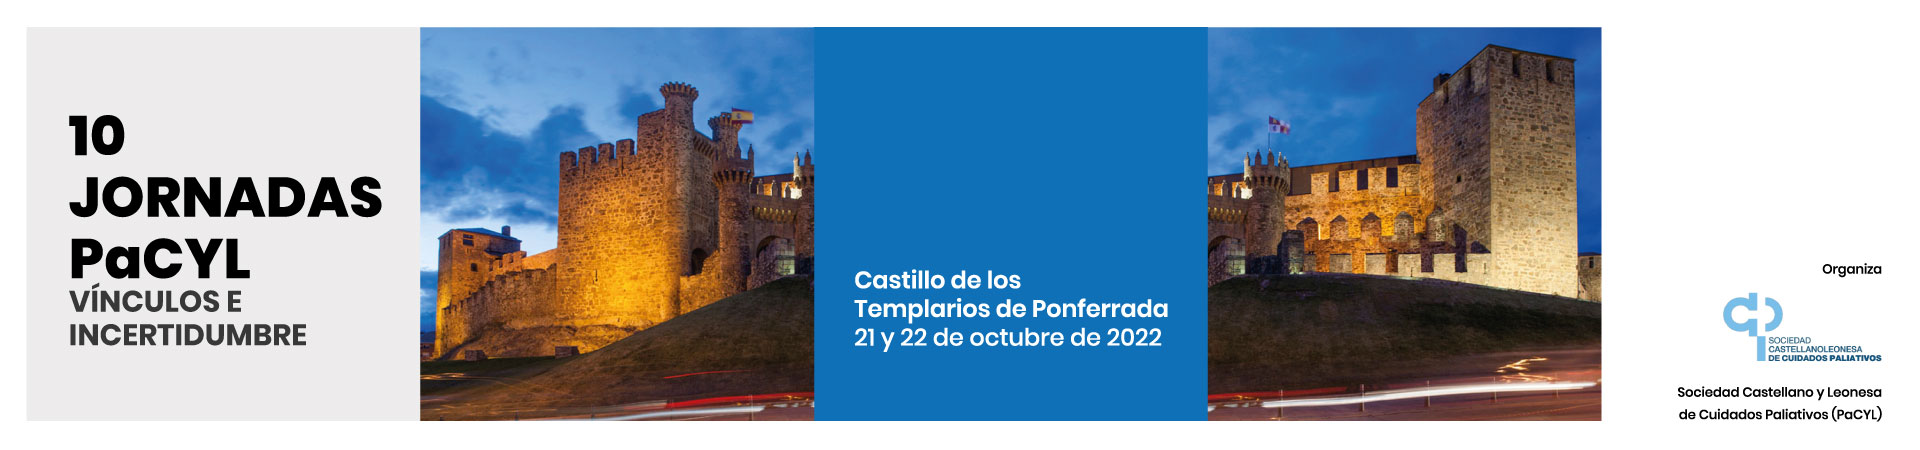 10 JORNADA PaCYL "Vínculos e incertidumbres" @ Castillo de los Templarios / Castillo de Ponferrada